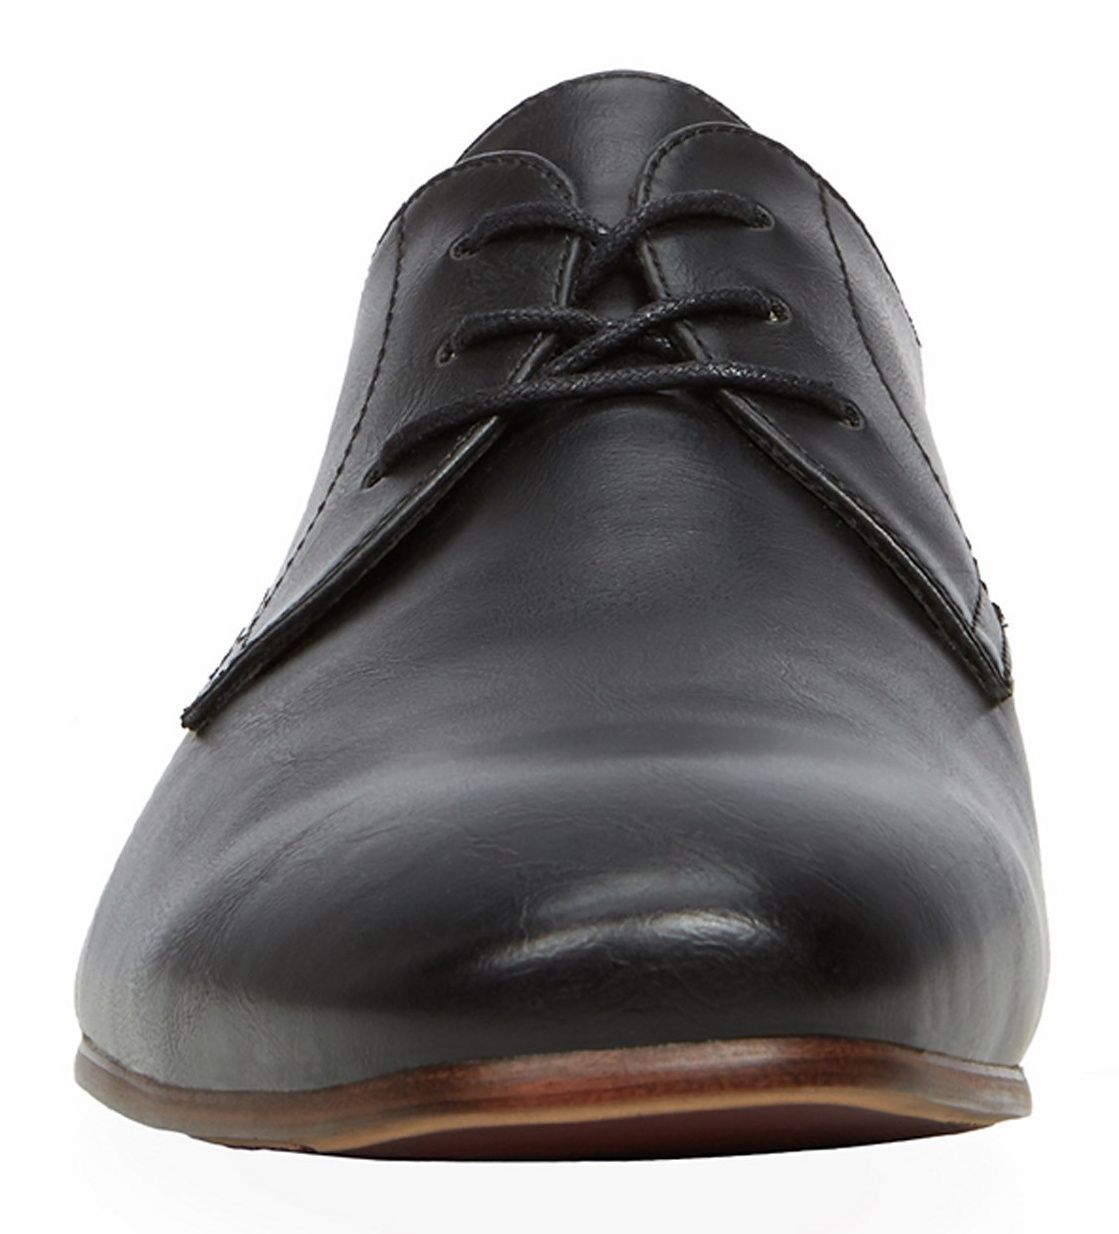 کفش رسمی مردانه - کال ایت اسپرینگ - مشکي - 4